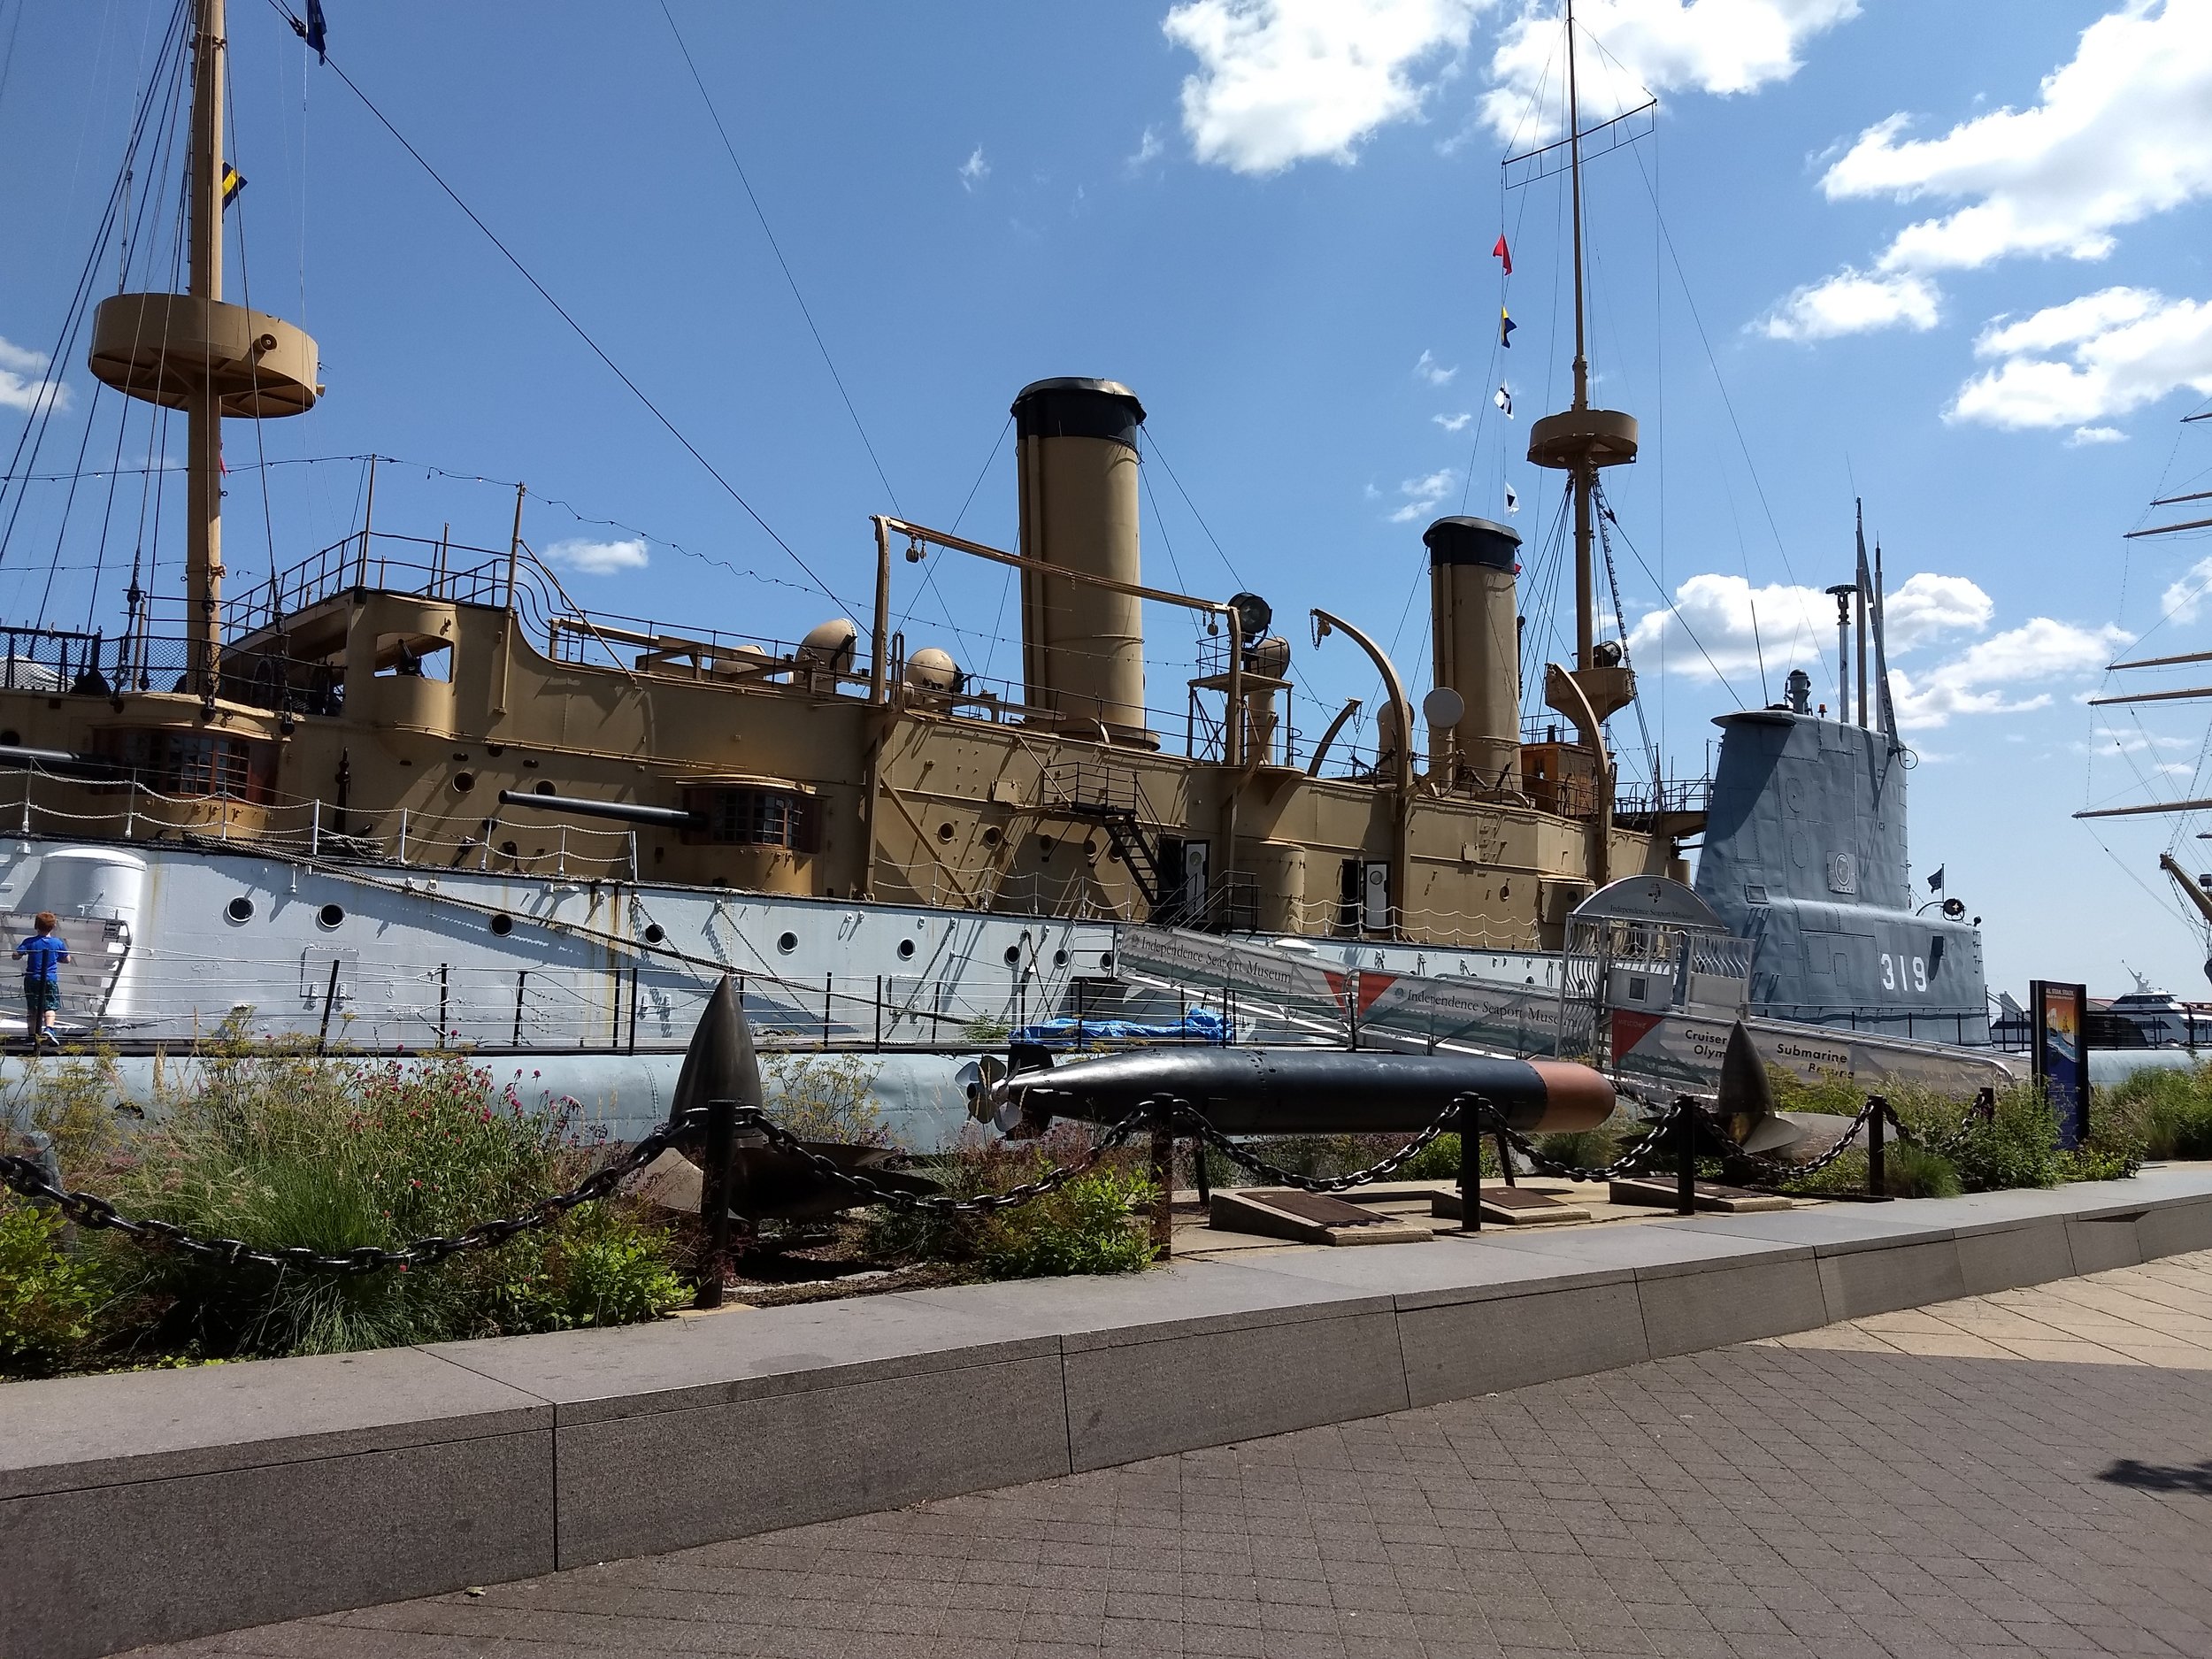 Historic cruiser ship and submarine docked at Penn's Landing, Philadelphia.